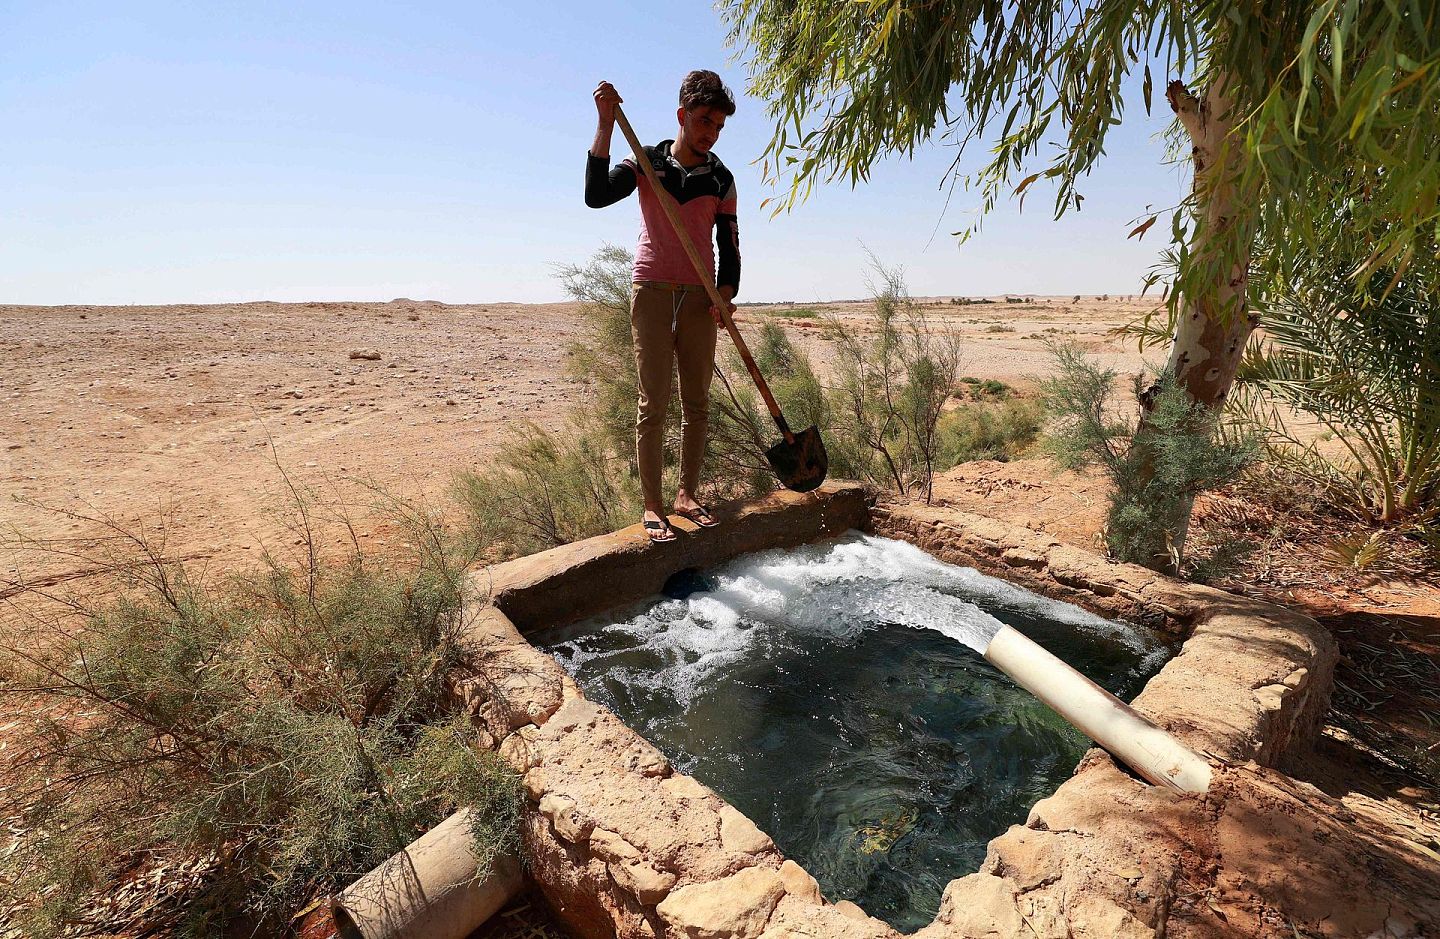 当地时间2021年9月16日，伊拉克安巴尔省中部Wadi Houran地区的Al-Sahl村，一位伊拉克农民在农田清洗他的铁锹。在伊拉克广阔的西部沙漠，大约有200户人家住在Al-Sahl村，一个与外界基本隔绝的小村庄，他们唯一的邻居是该国最大的军事基地之一。（视觉中国）